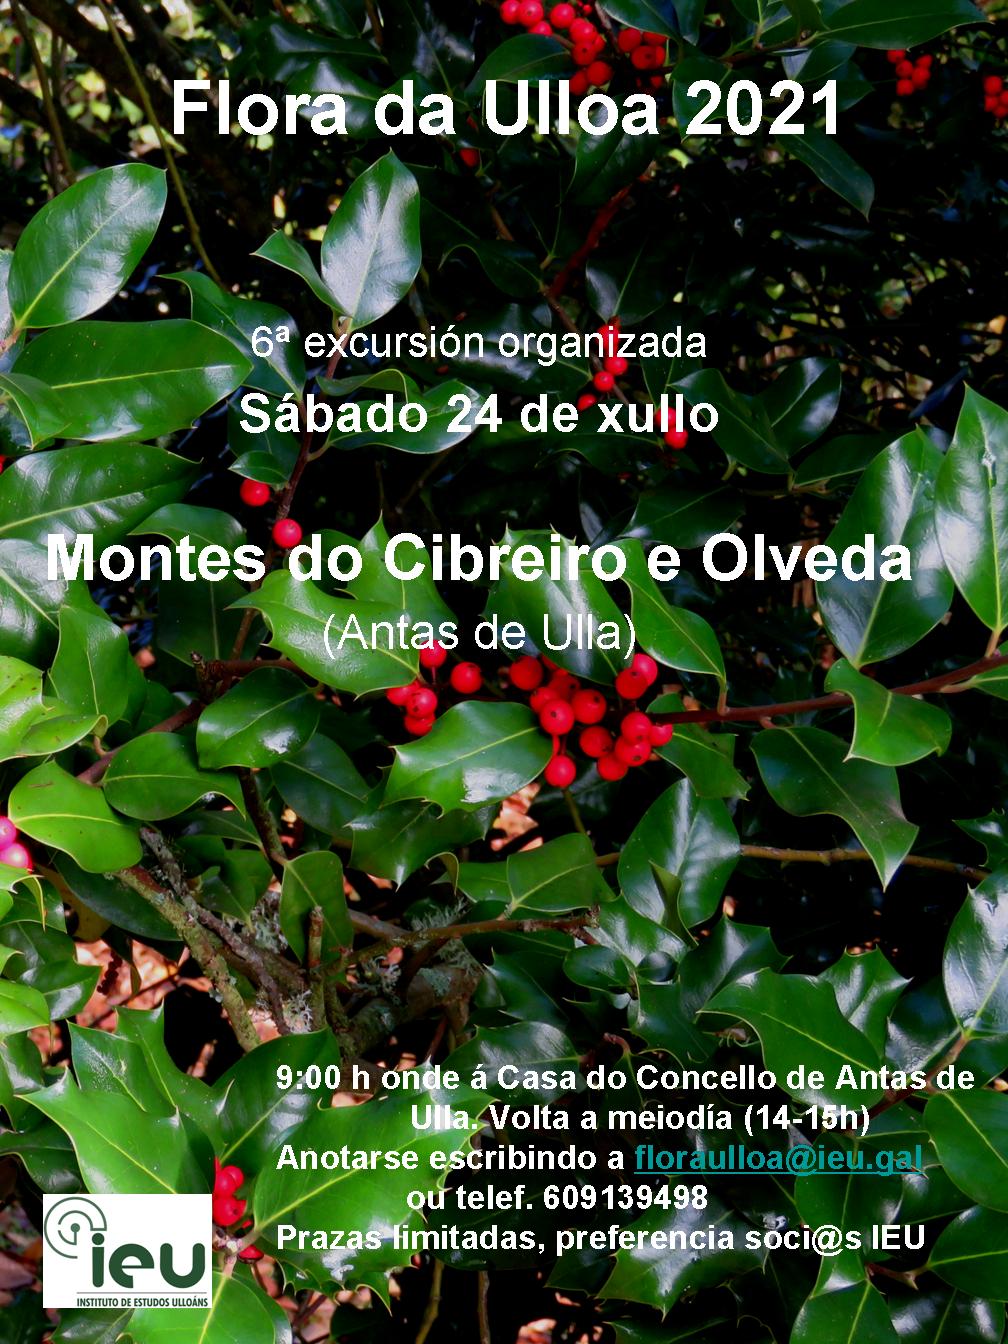 Excursión Flora da Ulloa 6ª-2021, Montes de Cibreiro e Olveda, Instituto de Estudos Ulloáns